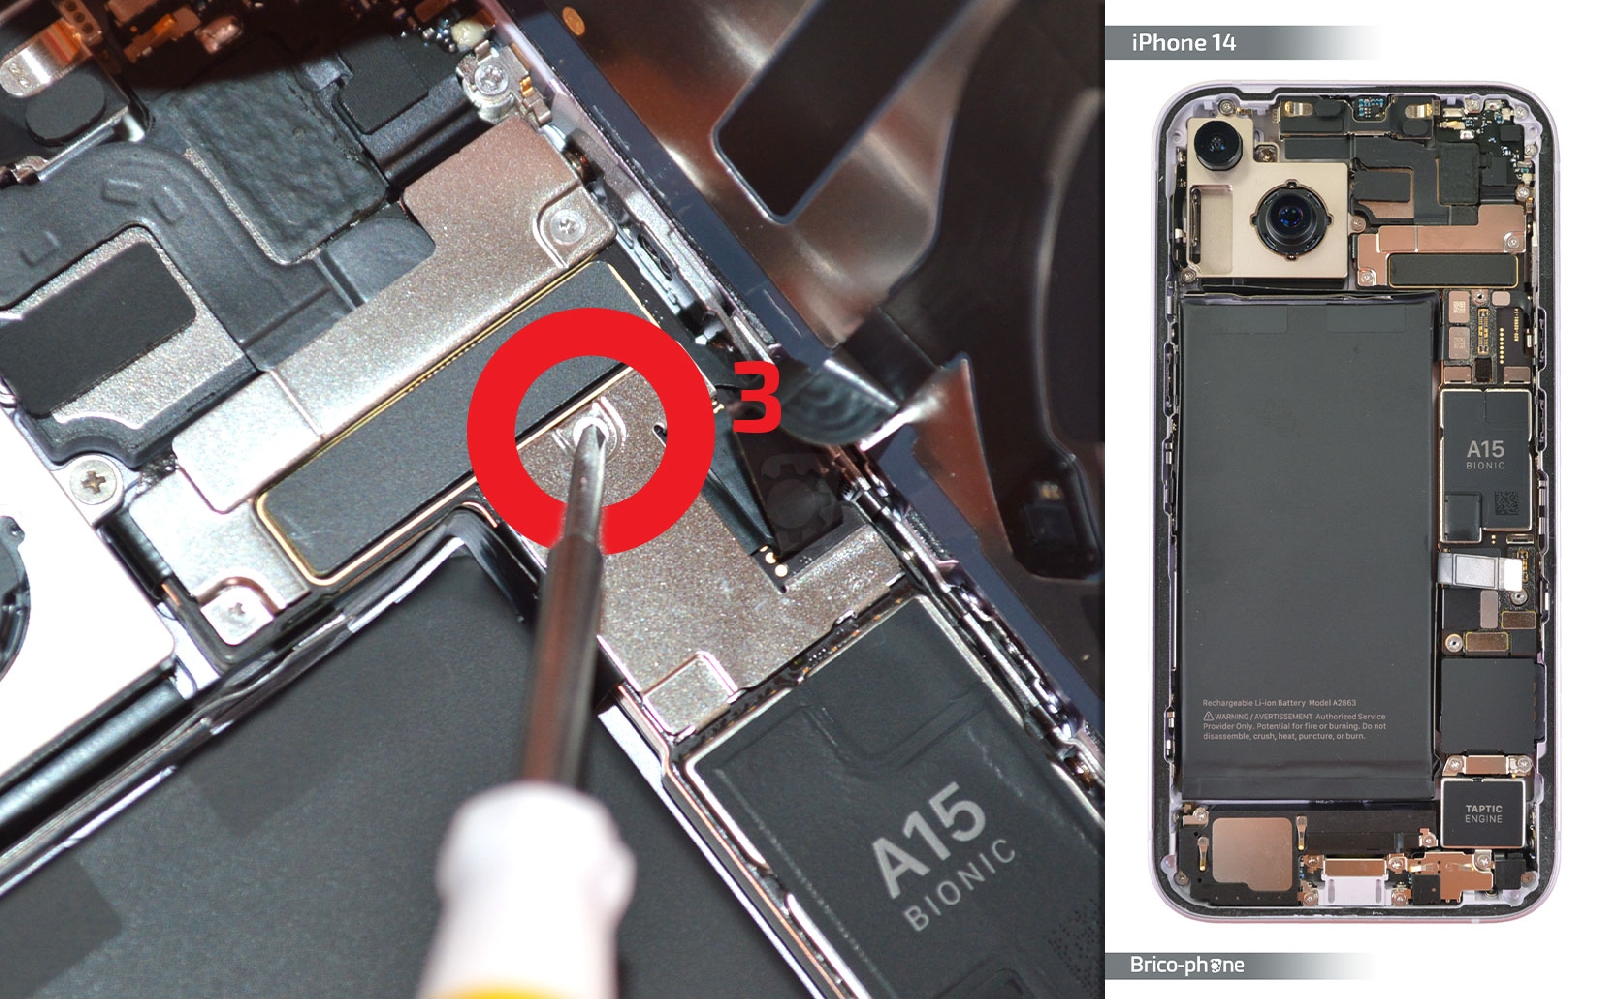 Remplacement de la batterie de l'iPhone 4 - Tutoriel de réparation